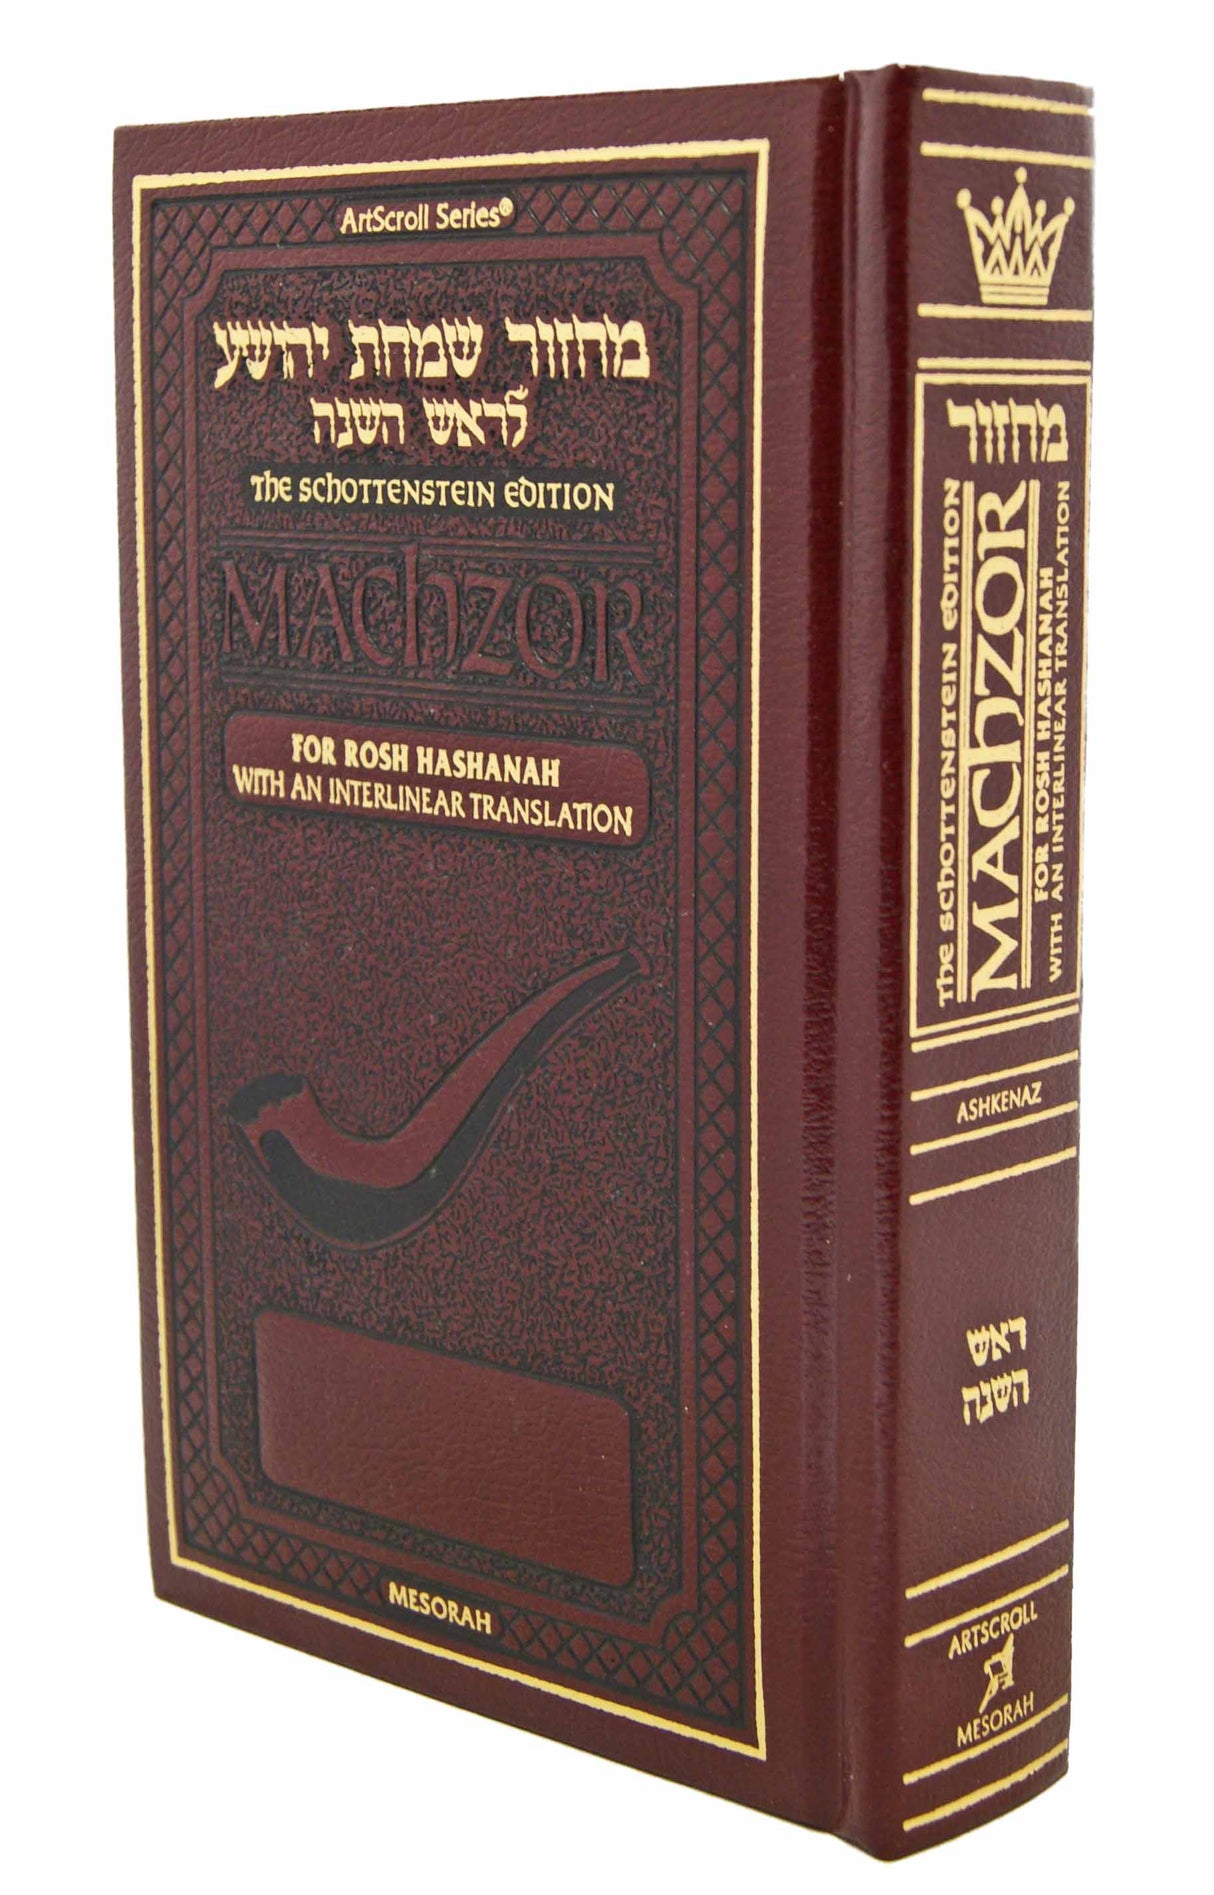 Schottenstein Interlinear Rosh HaShanah Machzor - Full Size Maroon Leather - Ashkenaz